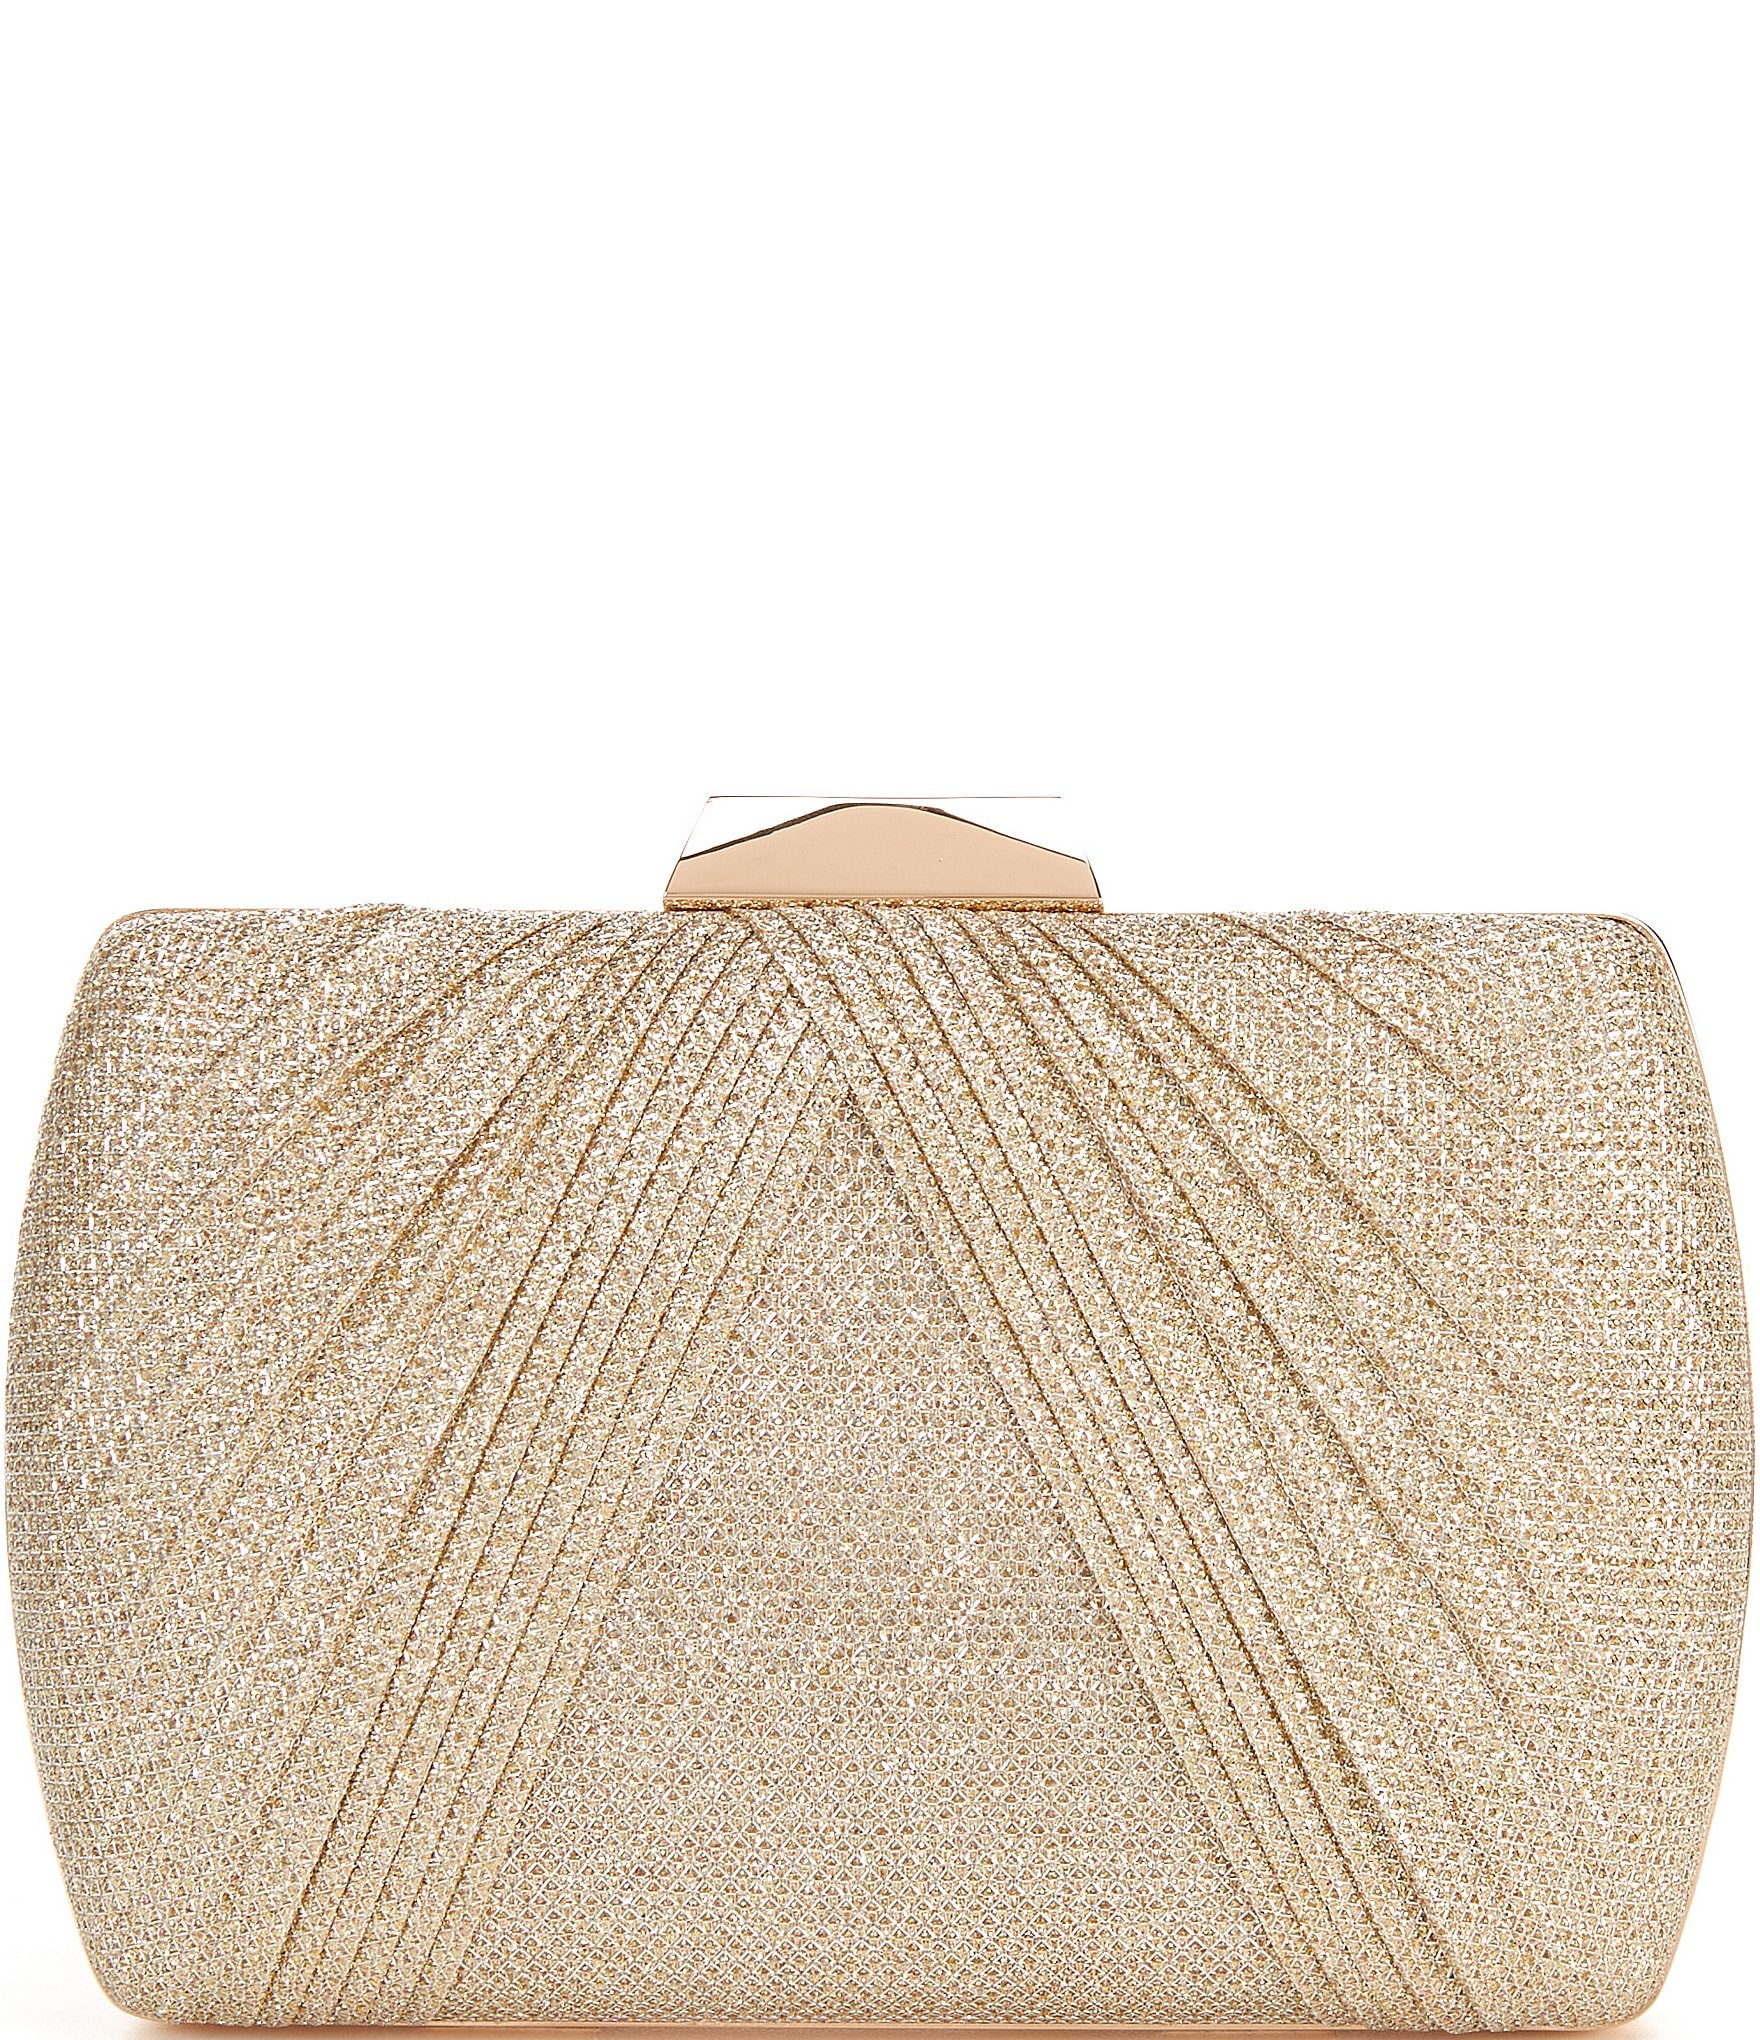 Buy Mochi Women Gold Bag Evening Bag Online | SKU: 38-4865-15-10 – Mochi  Shoes